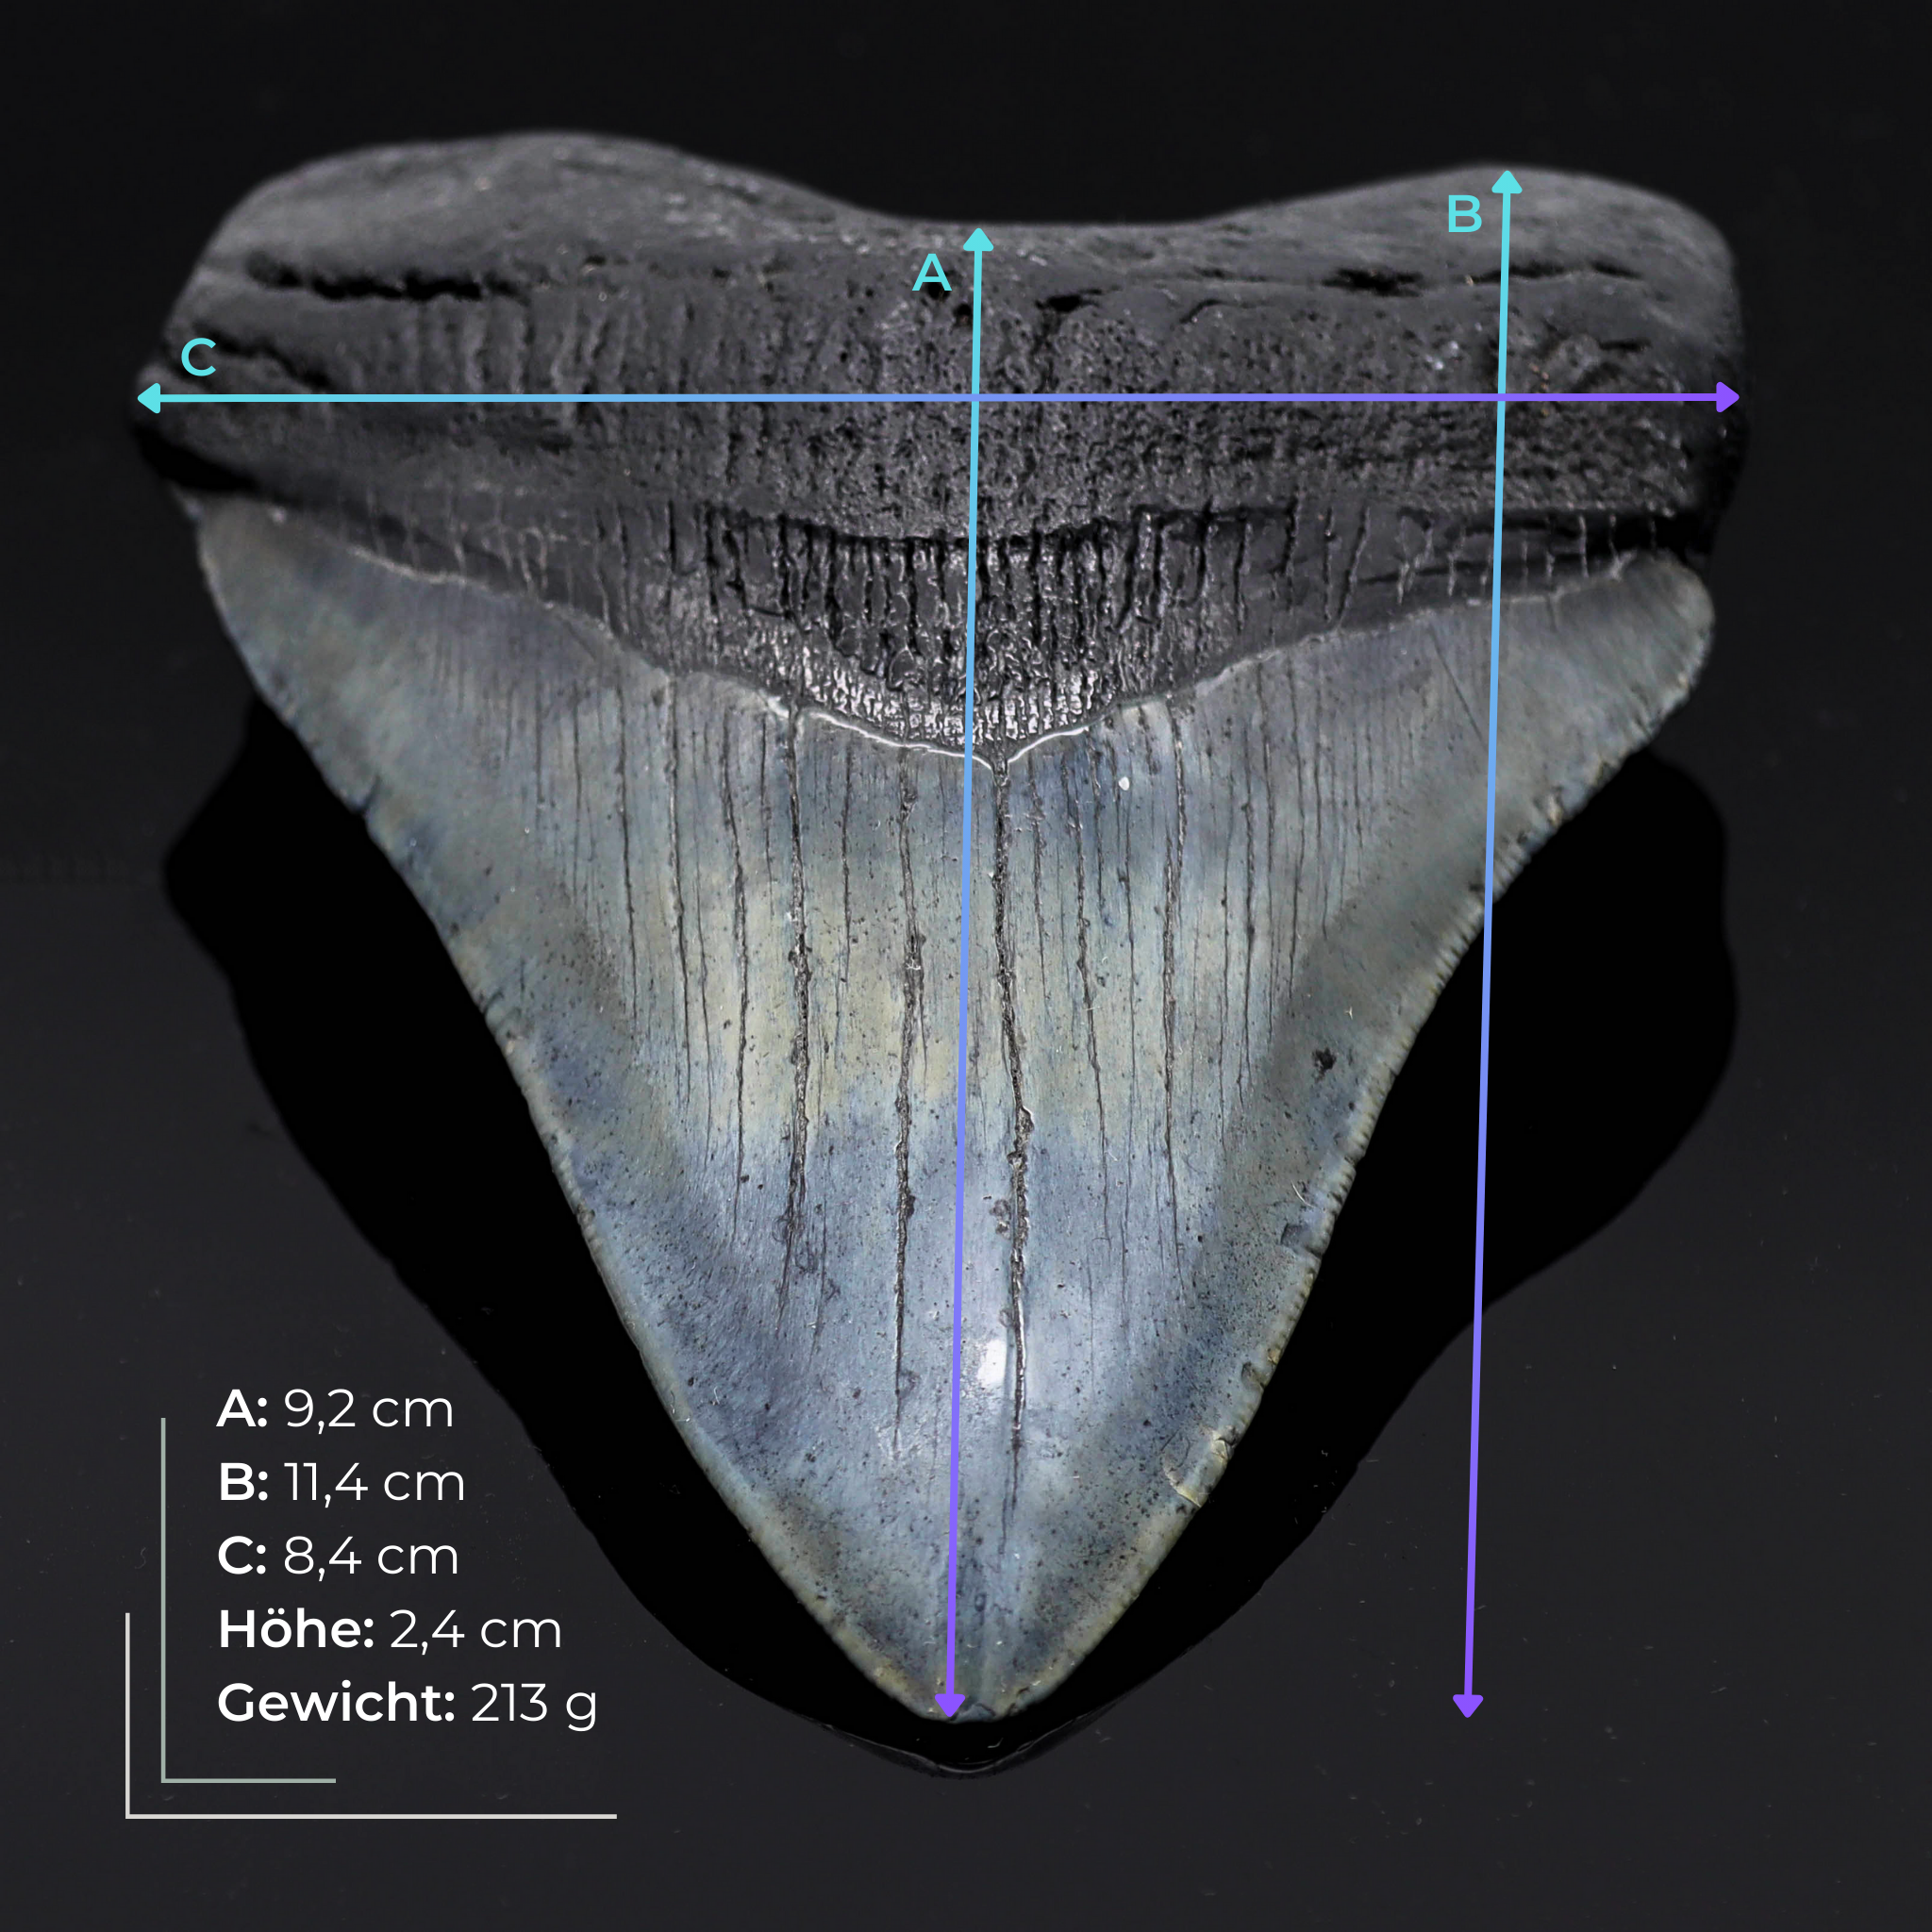 Megalodon Zahn versteinert #9 (11,4cm, 213g)